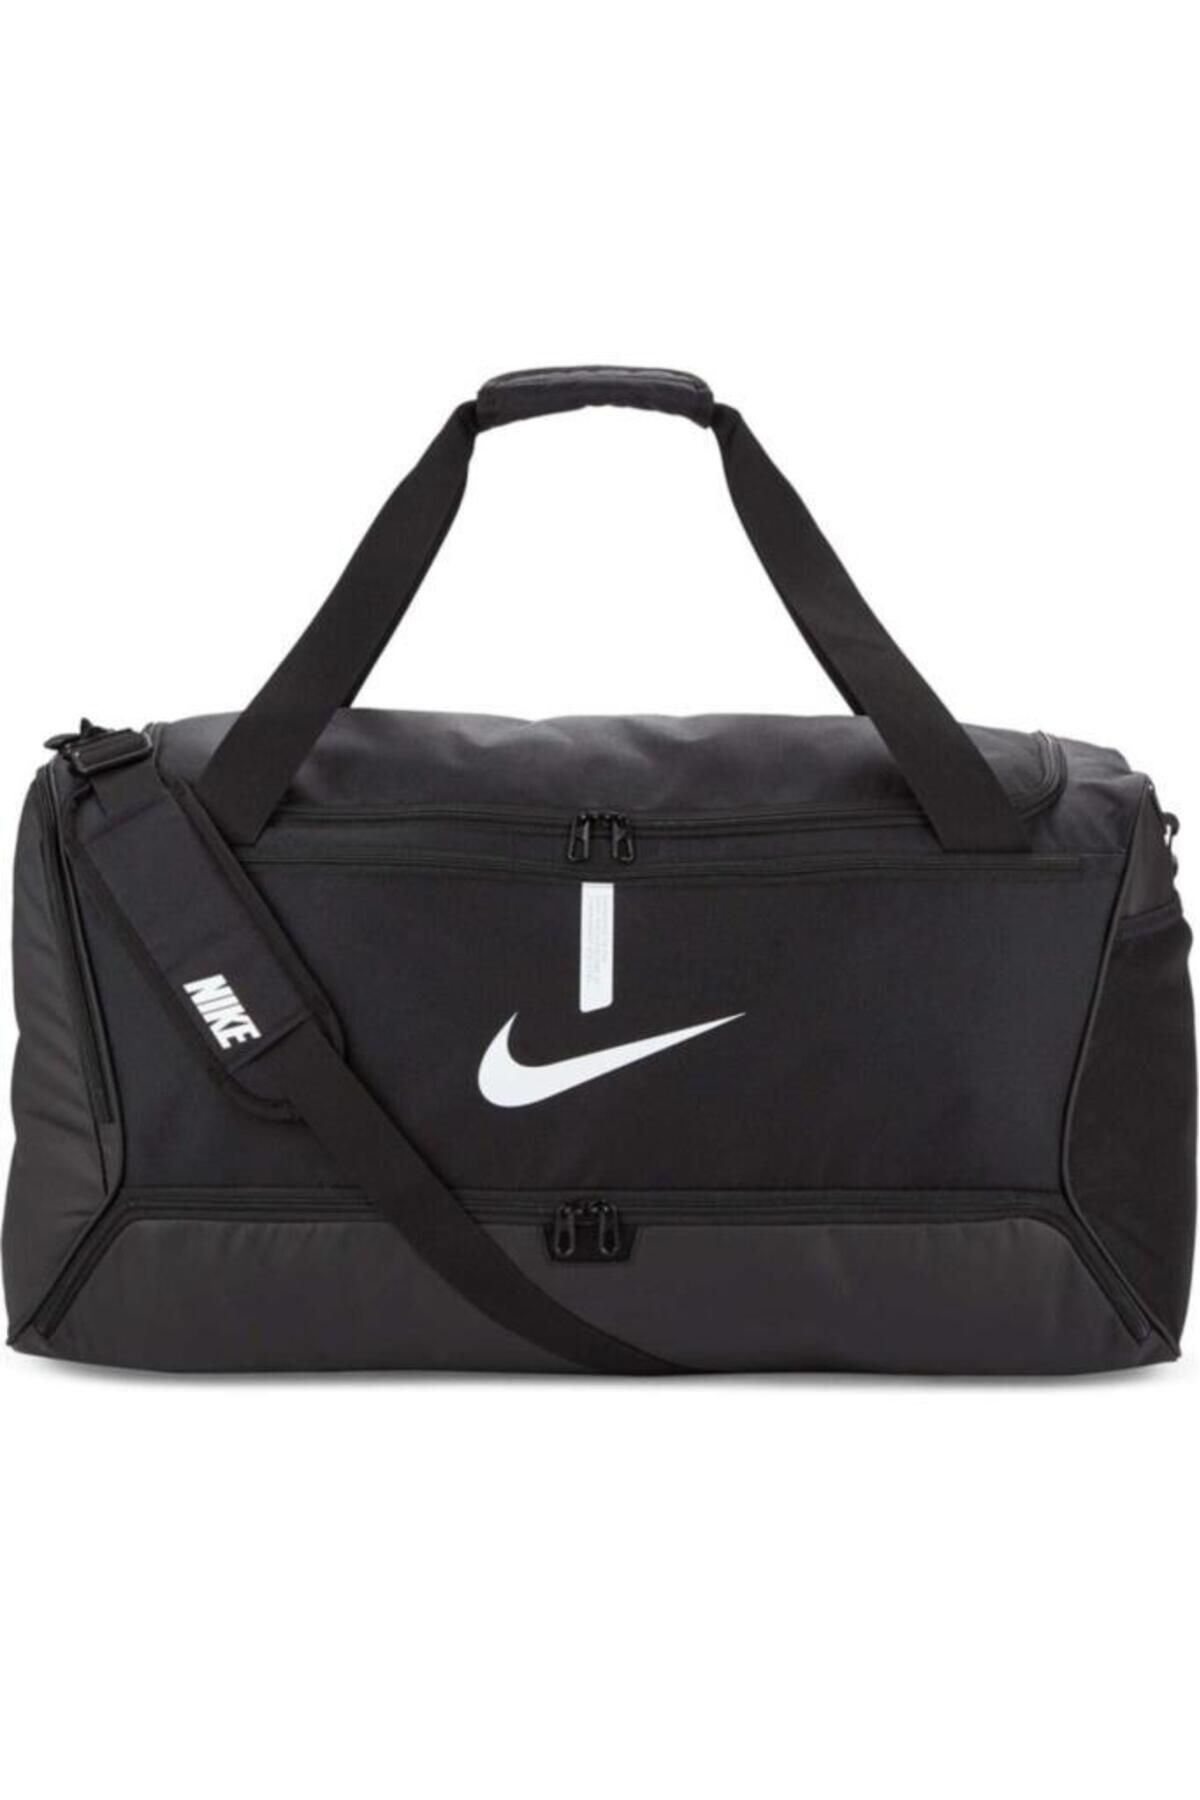 Nike Academy Team L Duffel Bag Unisex Spor Çanta Cu8089-010